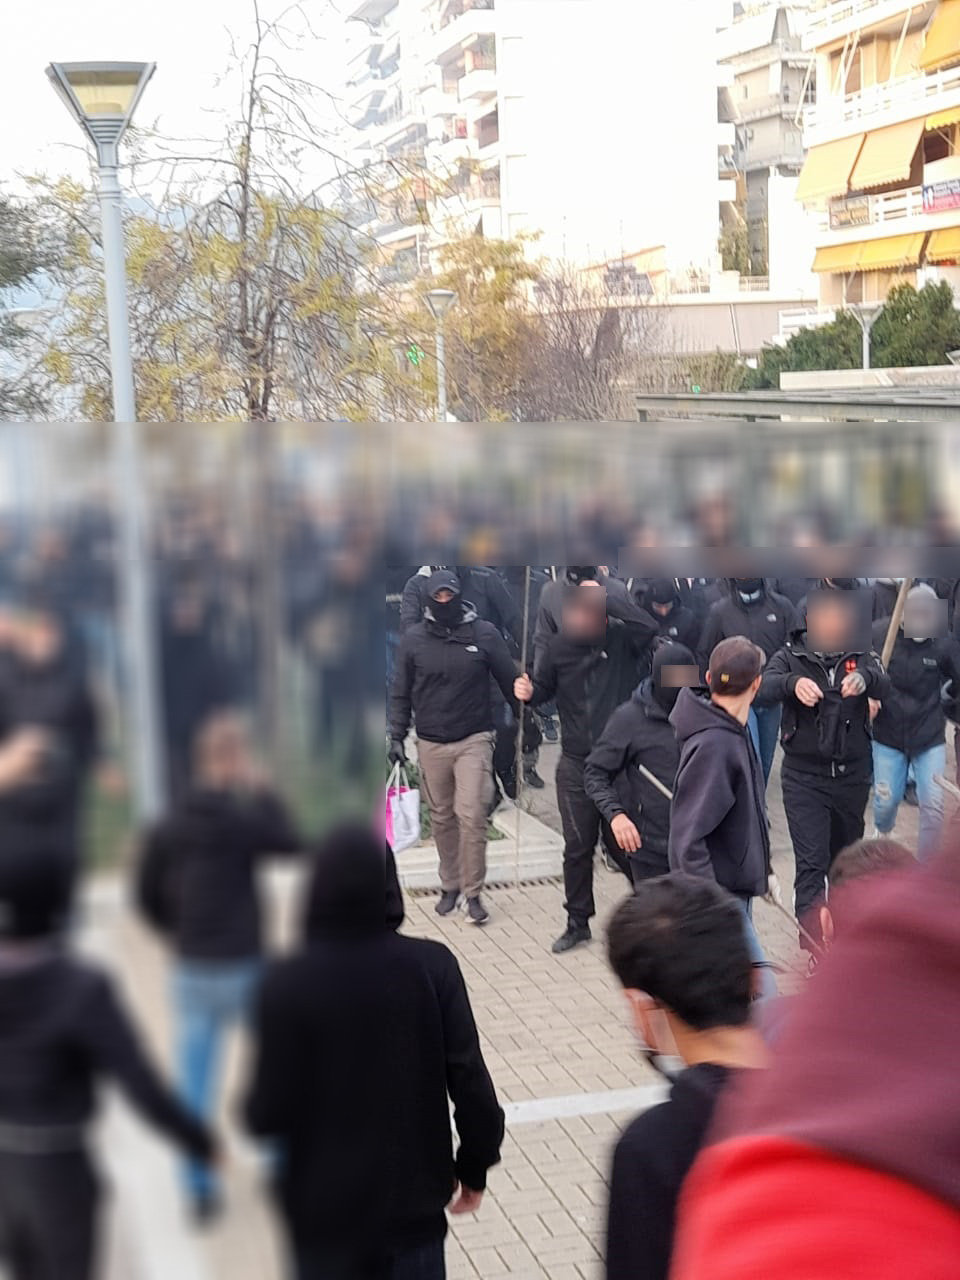 Εικόνα της αστυνομίας δείχνει αντιεξουσιαστές με κουκούλες και μπετόβεργες στα χέρια